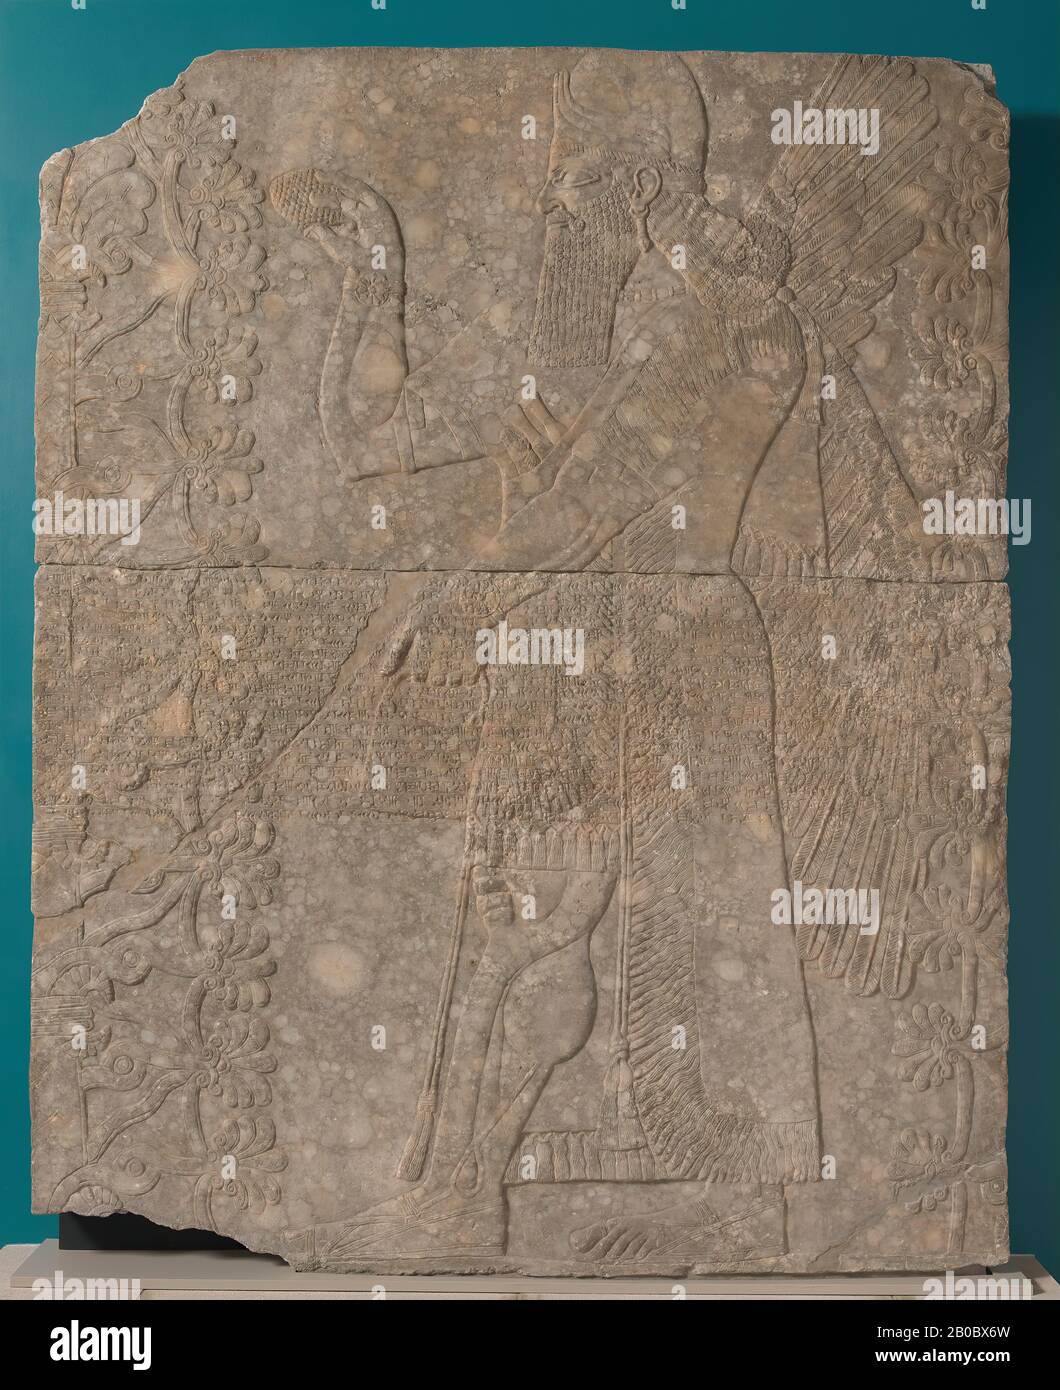 Artiste inconnu, secours assyrien : Esprit ailé ou Apkallu et arbre sacré de Kalhu (Nimrud), Irak, Palais du Nord-Ouest, salle T, panneau 6, CA. 875–860 B.C.E., gypse (Mossoul alabaster), 91 7/16 po. X 73 3/16 po. X 5 7/16 po. (232,2 cm. X 185,9 cm. X 13,8 cm.), la figure aidée, ou l'esprit d'apkallu, est souvent mentionnée dans les textes assyriens. Avec des pouvoirs magiques et protecteurs, il sert à protéger le roi et son Royaume. La couronne hurissante annonce sa divinité, bien que son portrait porte une ressemblance onctueuse à Ashurnasirpal lui-même. Il tient un seau dans sa main gauche, tandis que dans sa droite, il saume a s. Banque D'Images